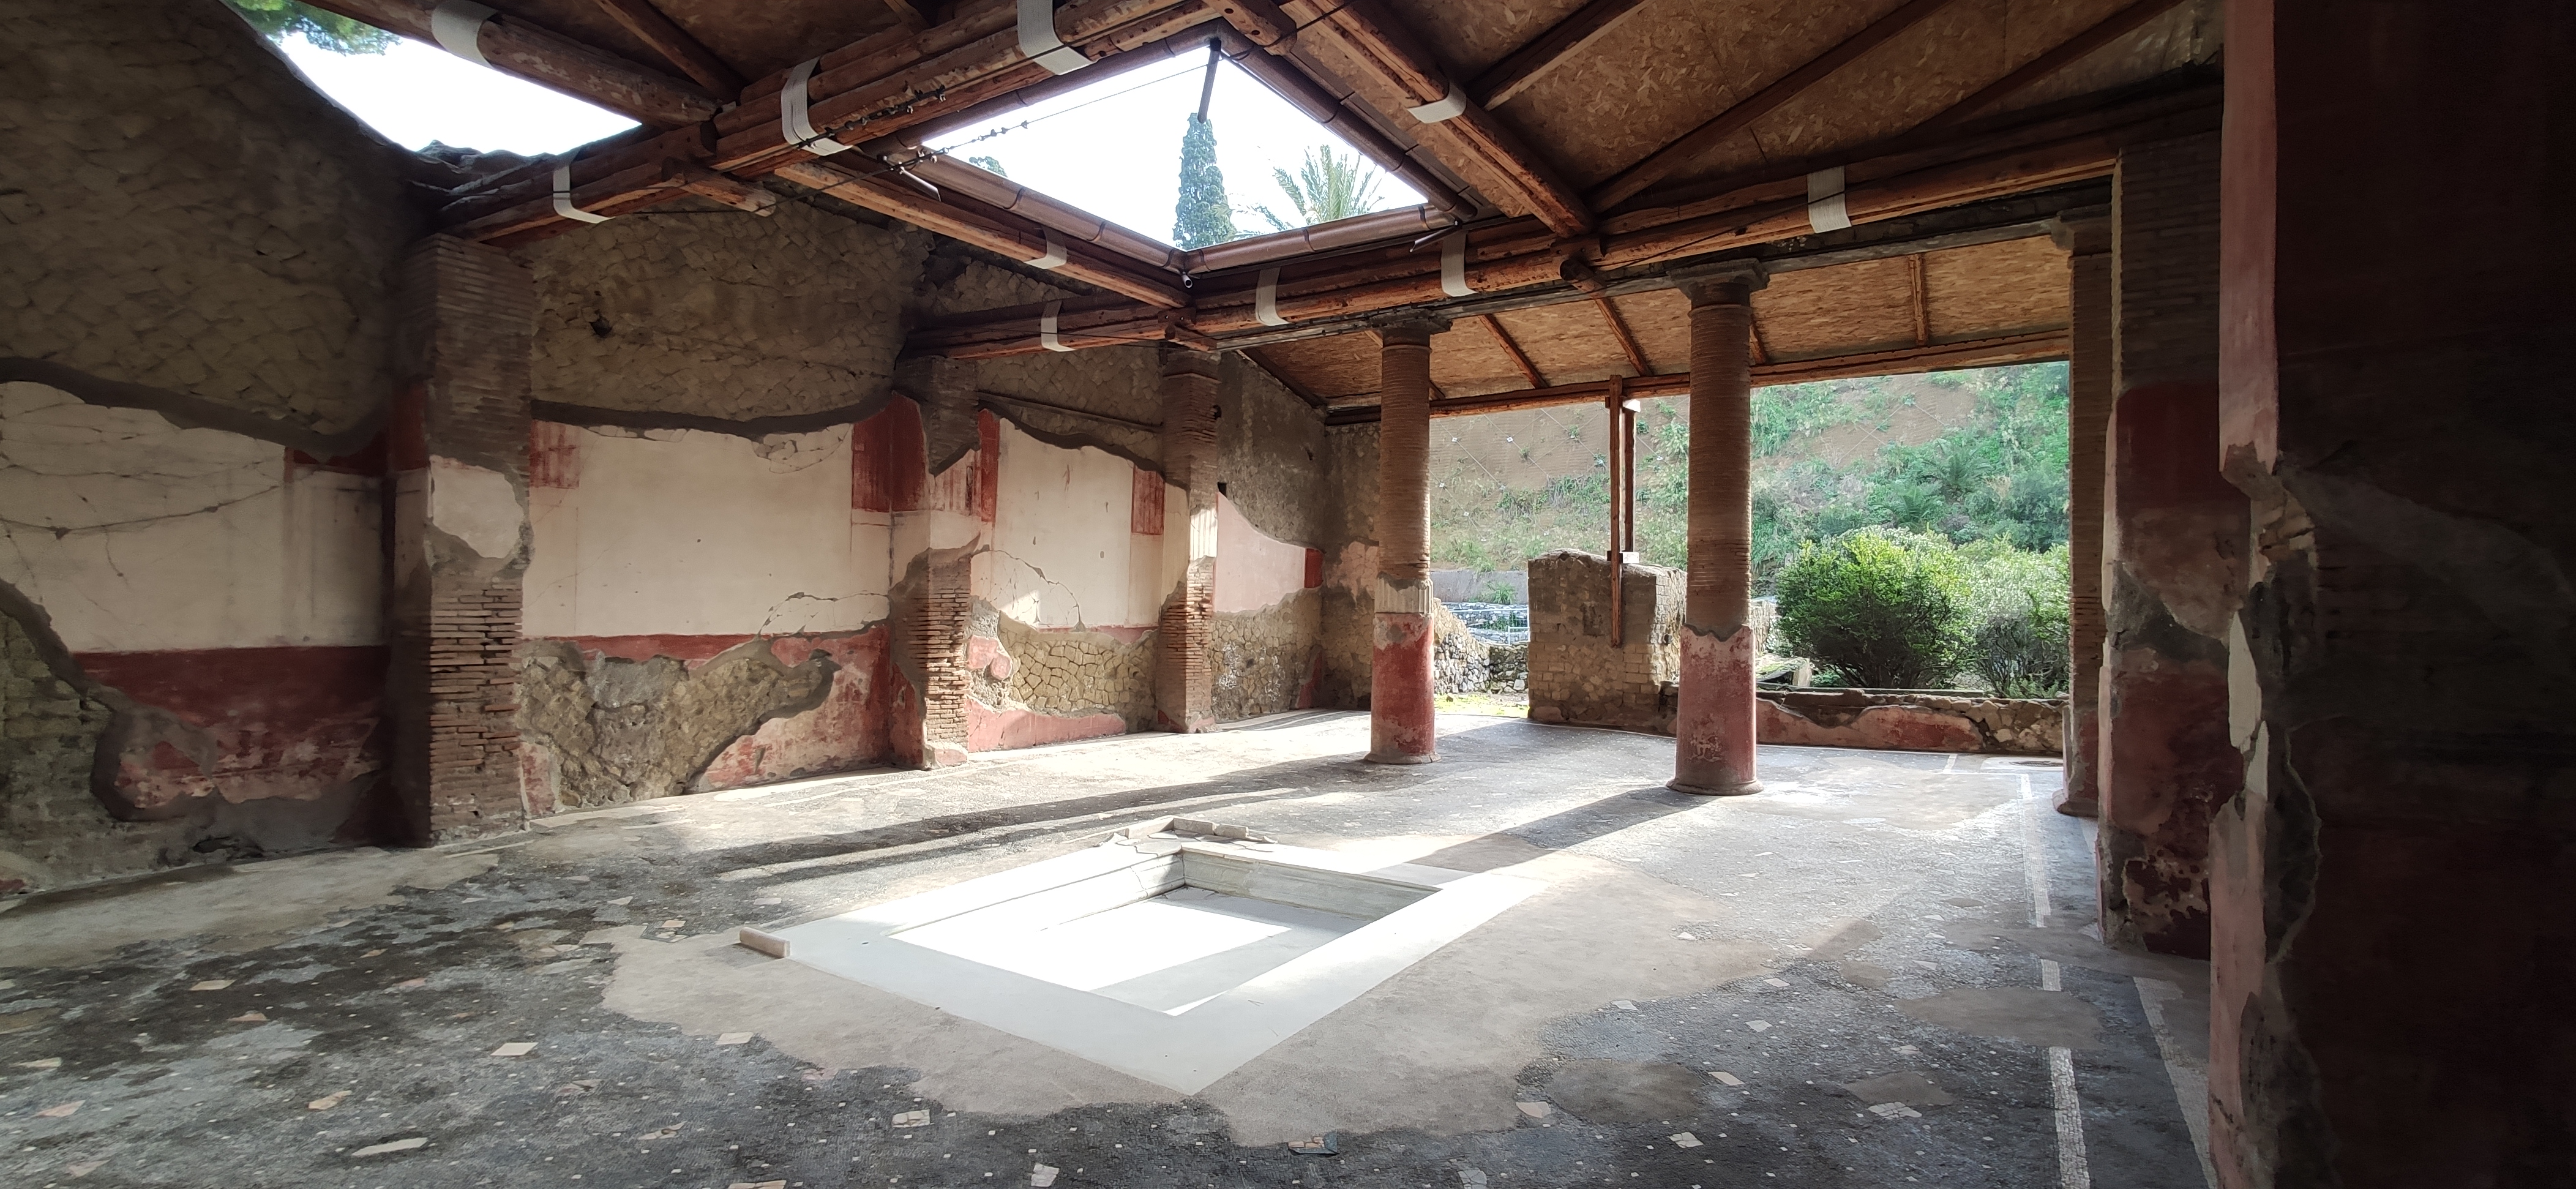 Apre al pubblico la Casa della Gemma del Parco Archeologico di Ercolano 